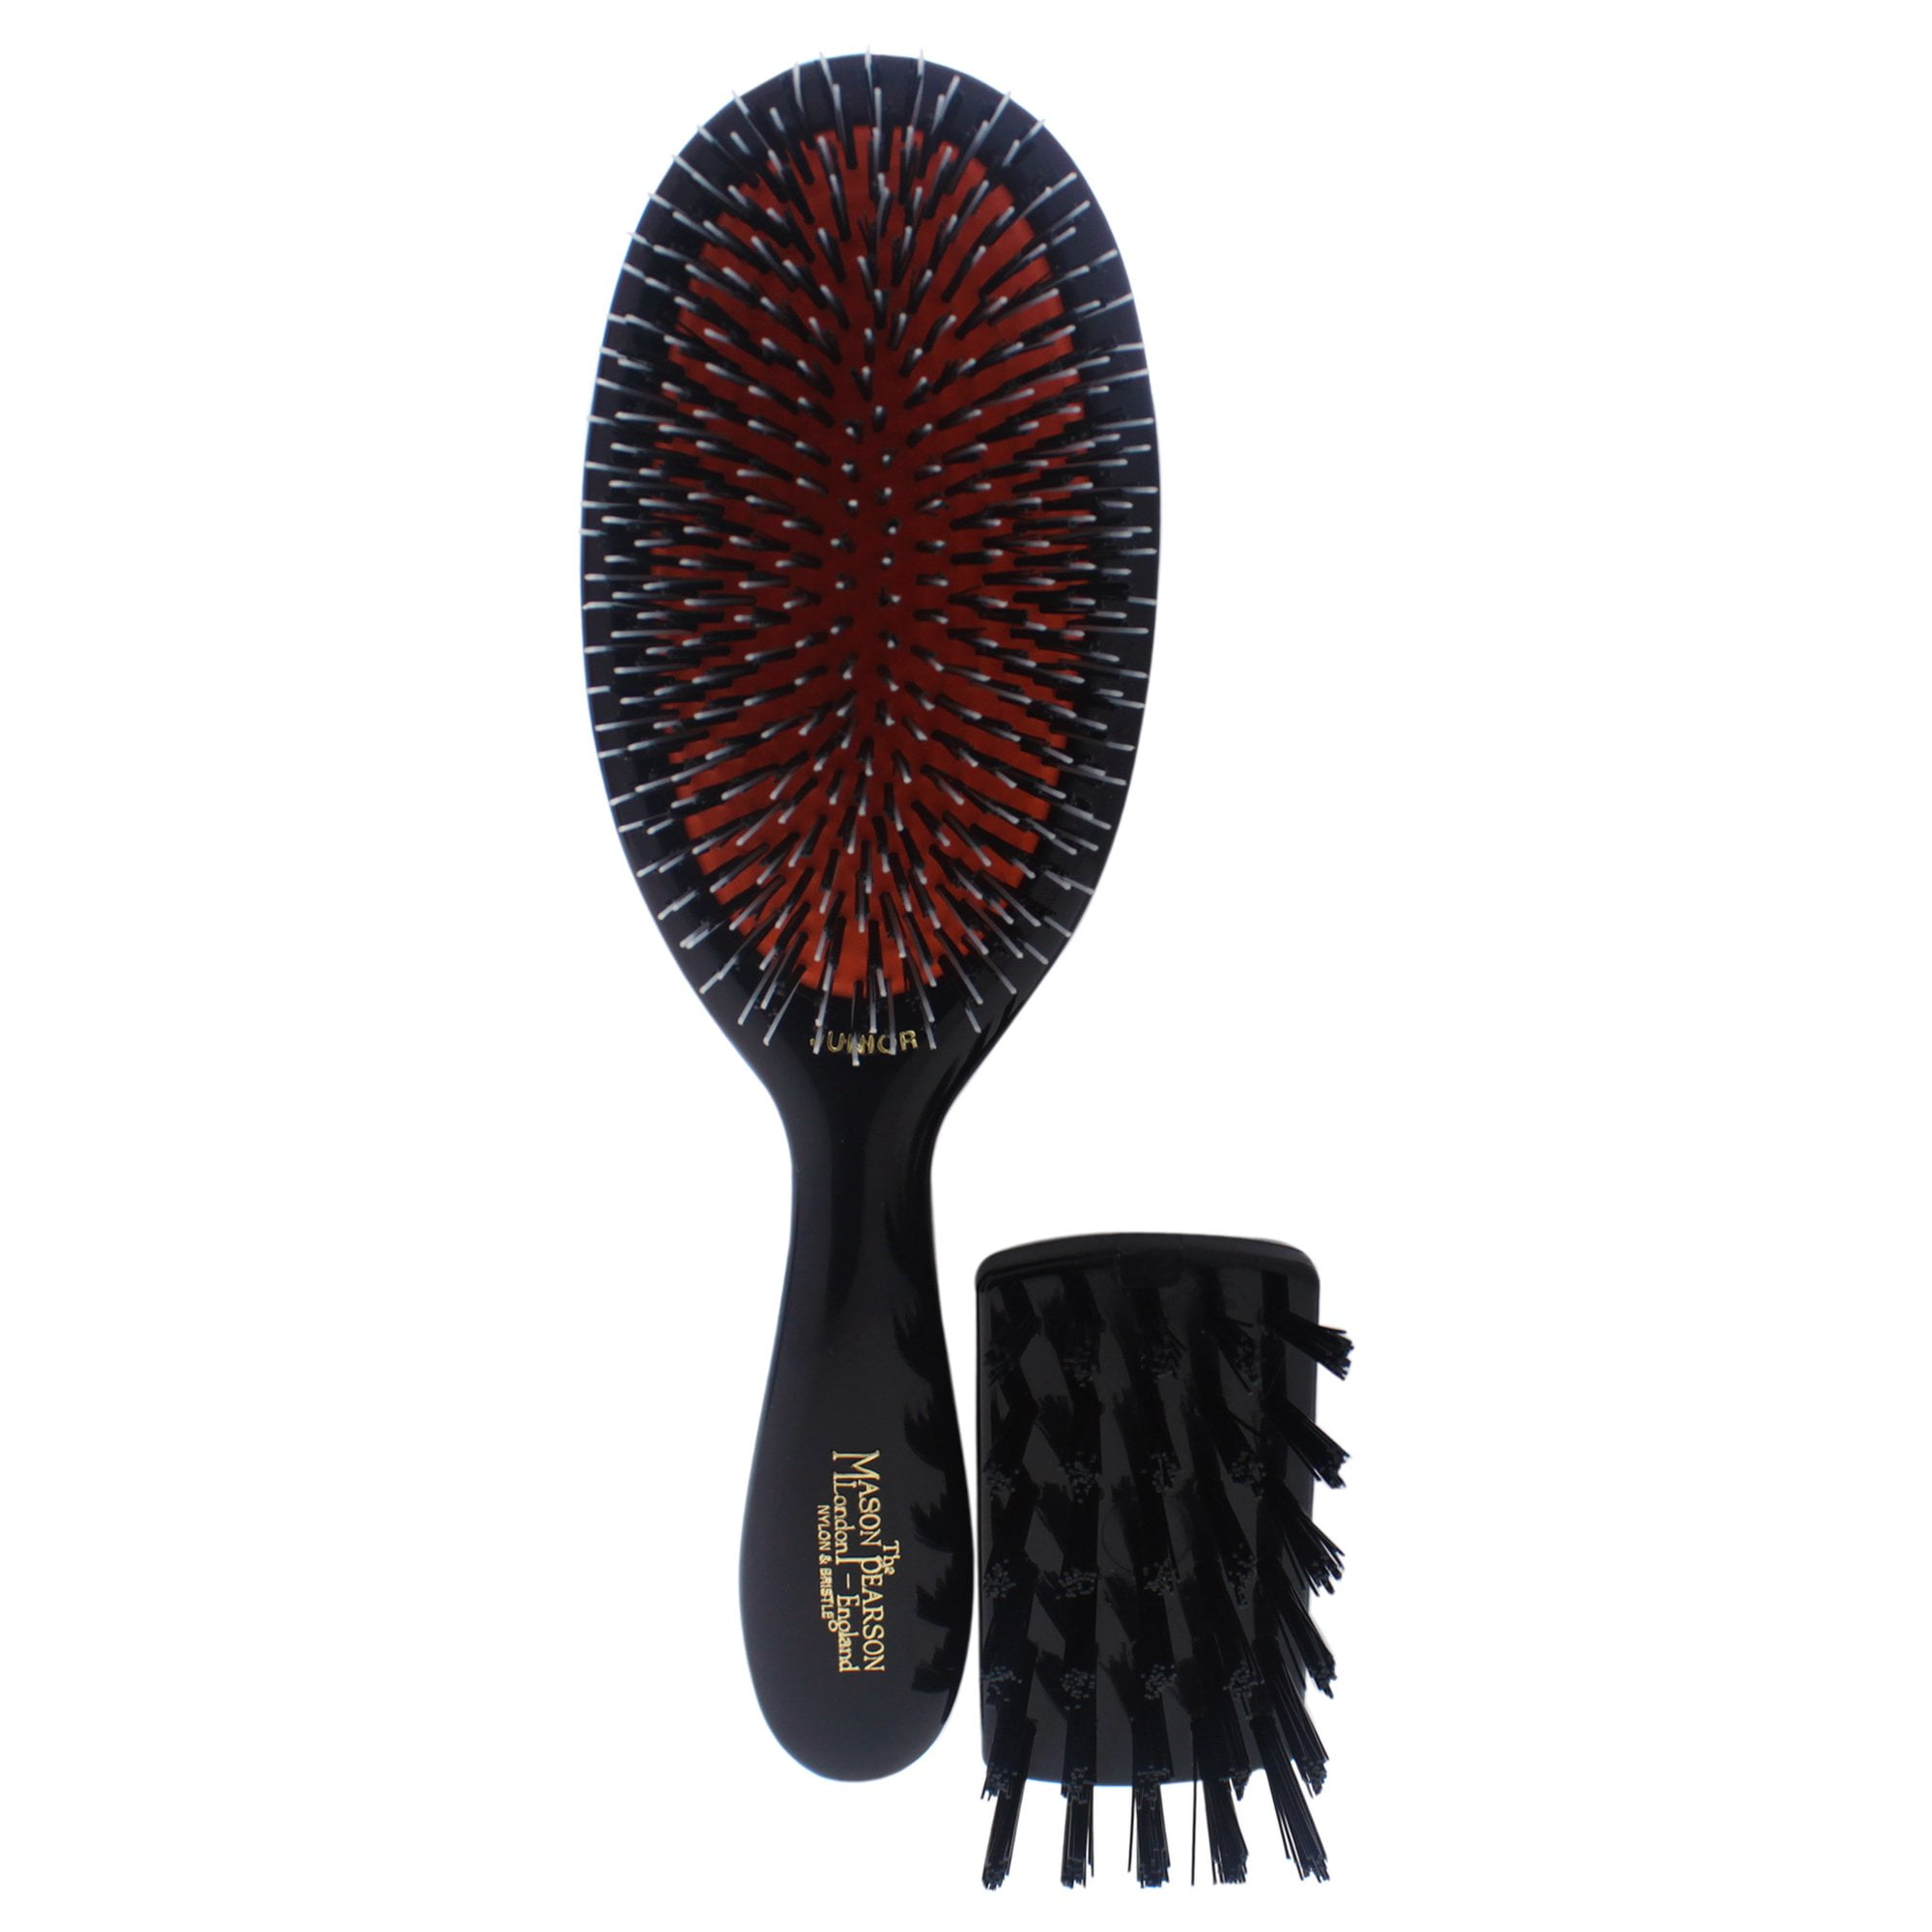 Cleaning and Junior Nylon Bristle and Pearson Brush Pc Hair - Brush Brush BN2 Ruby, Mason 2 Dark